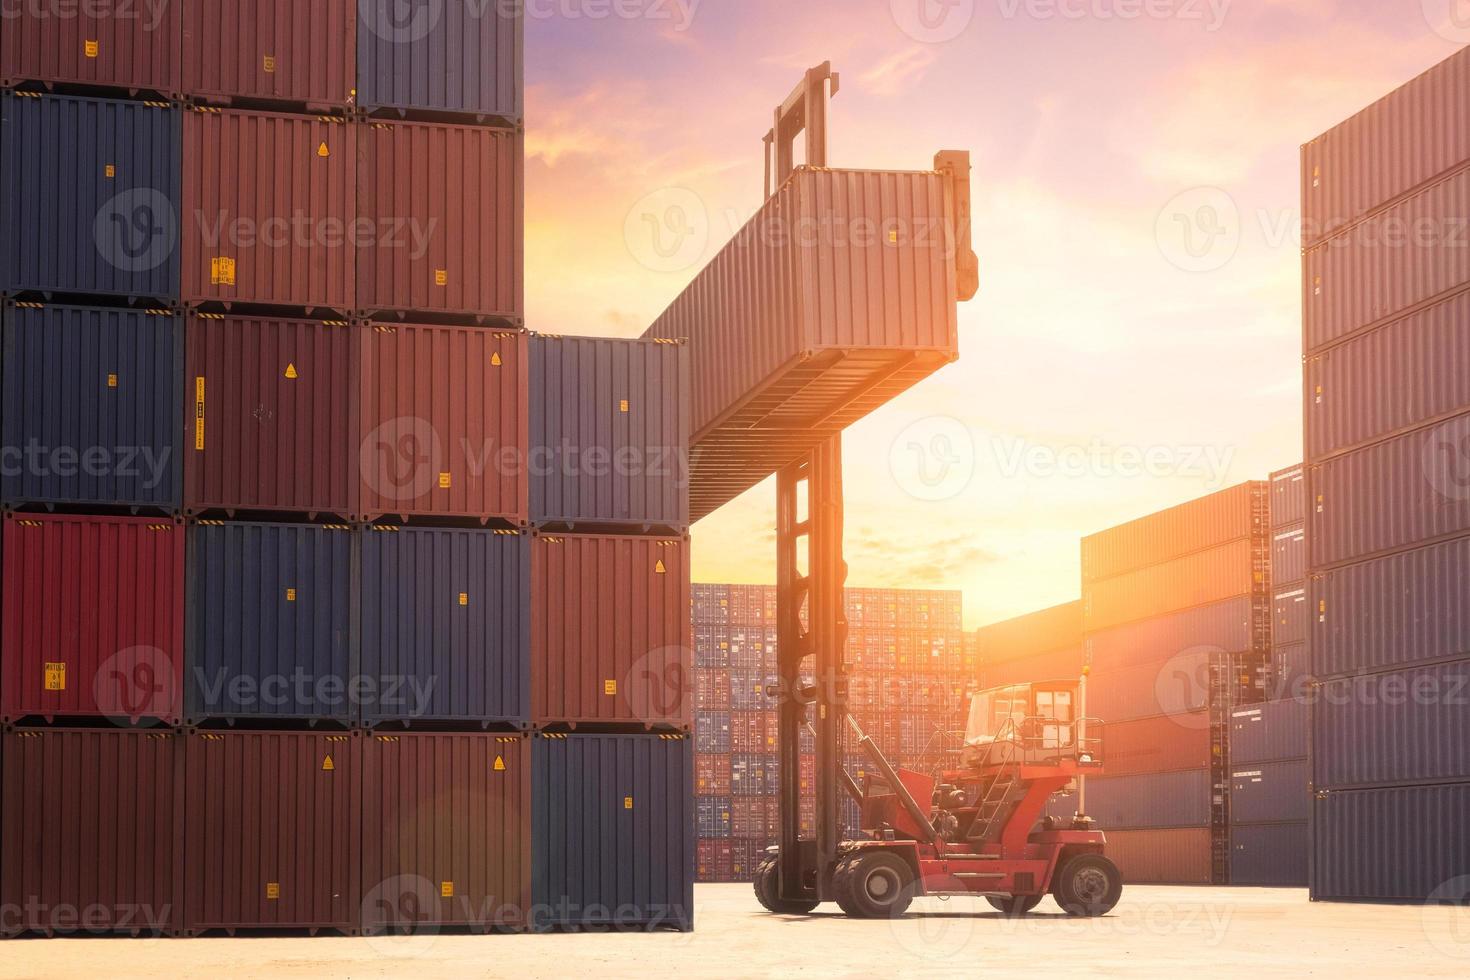 vorkheftruck die vrachtcontainer in scheepvaartwerf of dokwerf opheft tegen zonsopganghemel met vrachtcontainerstapel op achtergrond voor transportimport, -export en logistiek industrieel concept foto